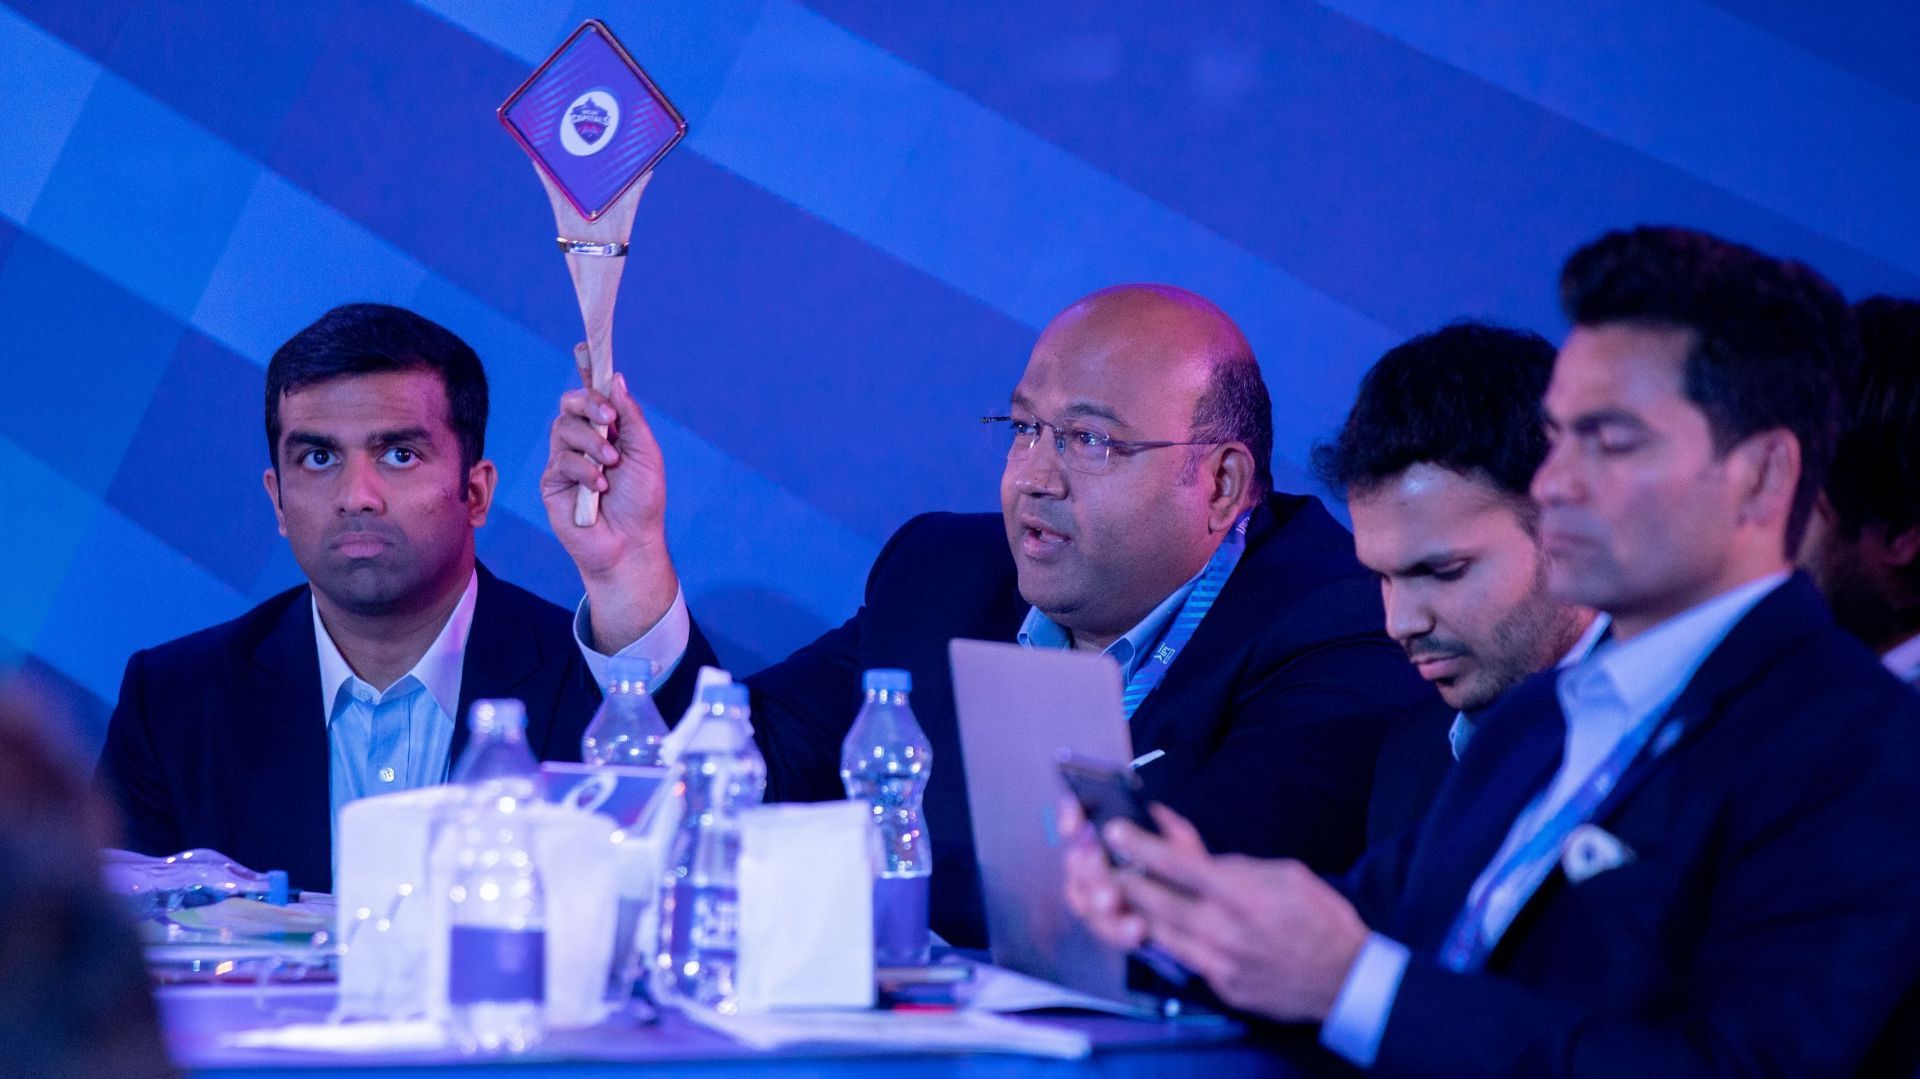 Delhi Capitals made their presence felt at the IPL 2022 mega auction